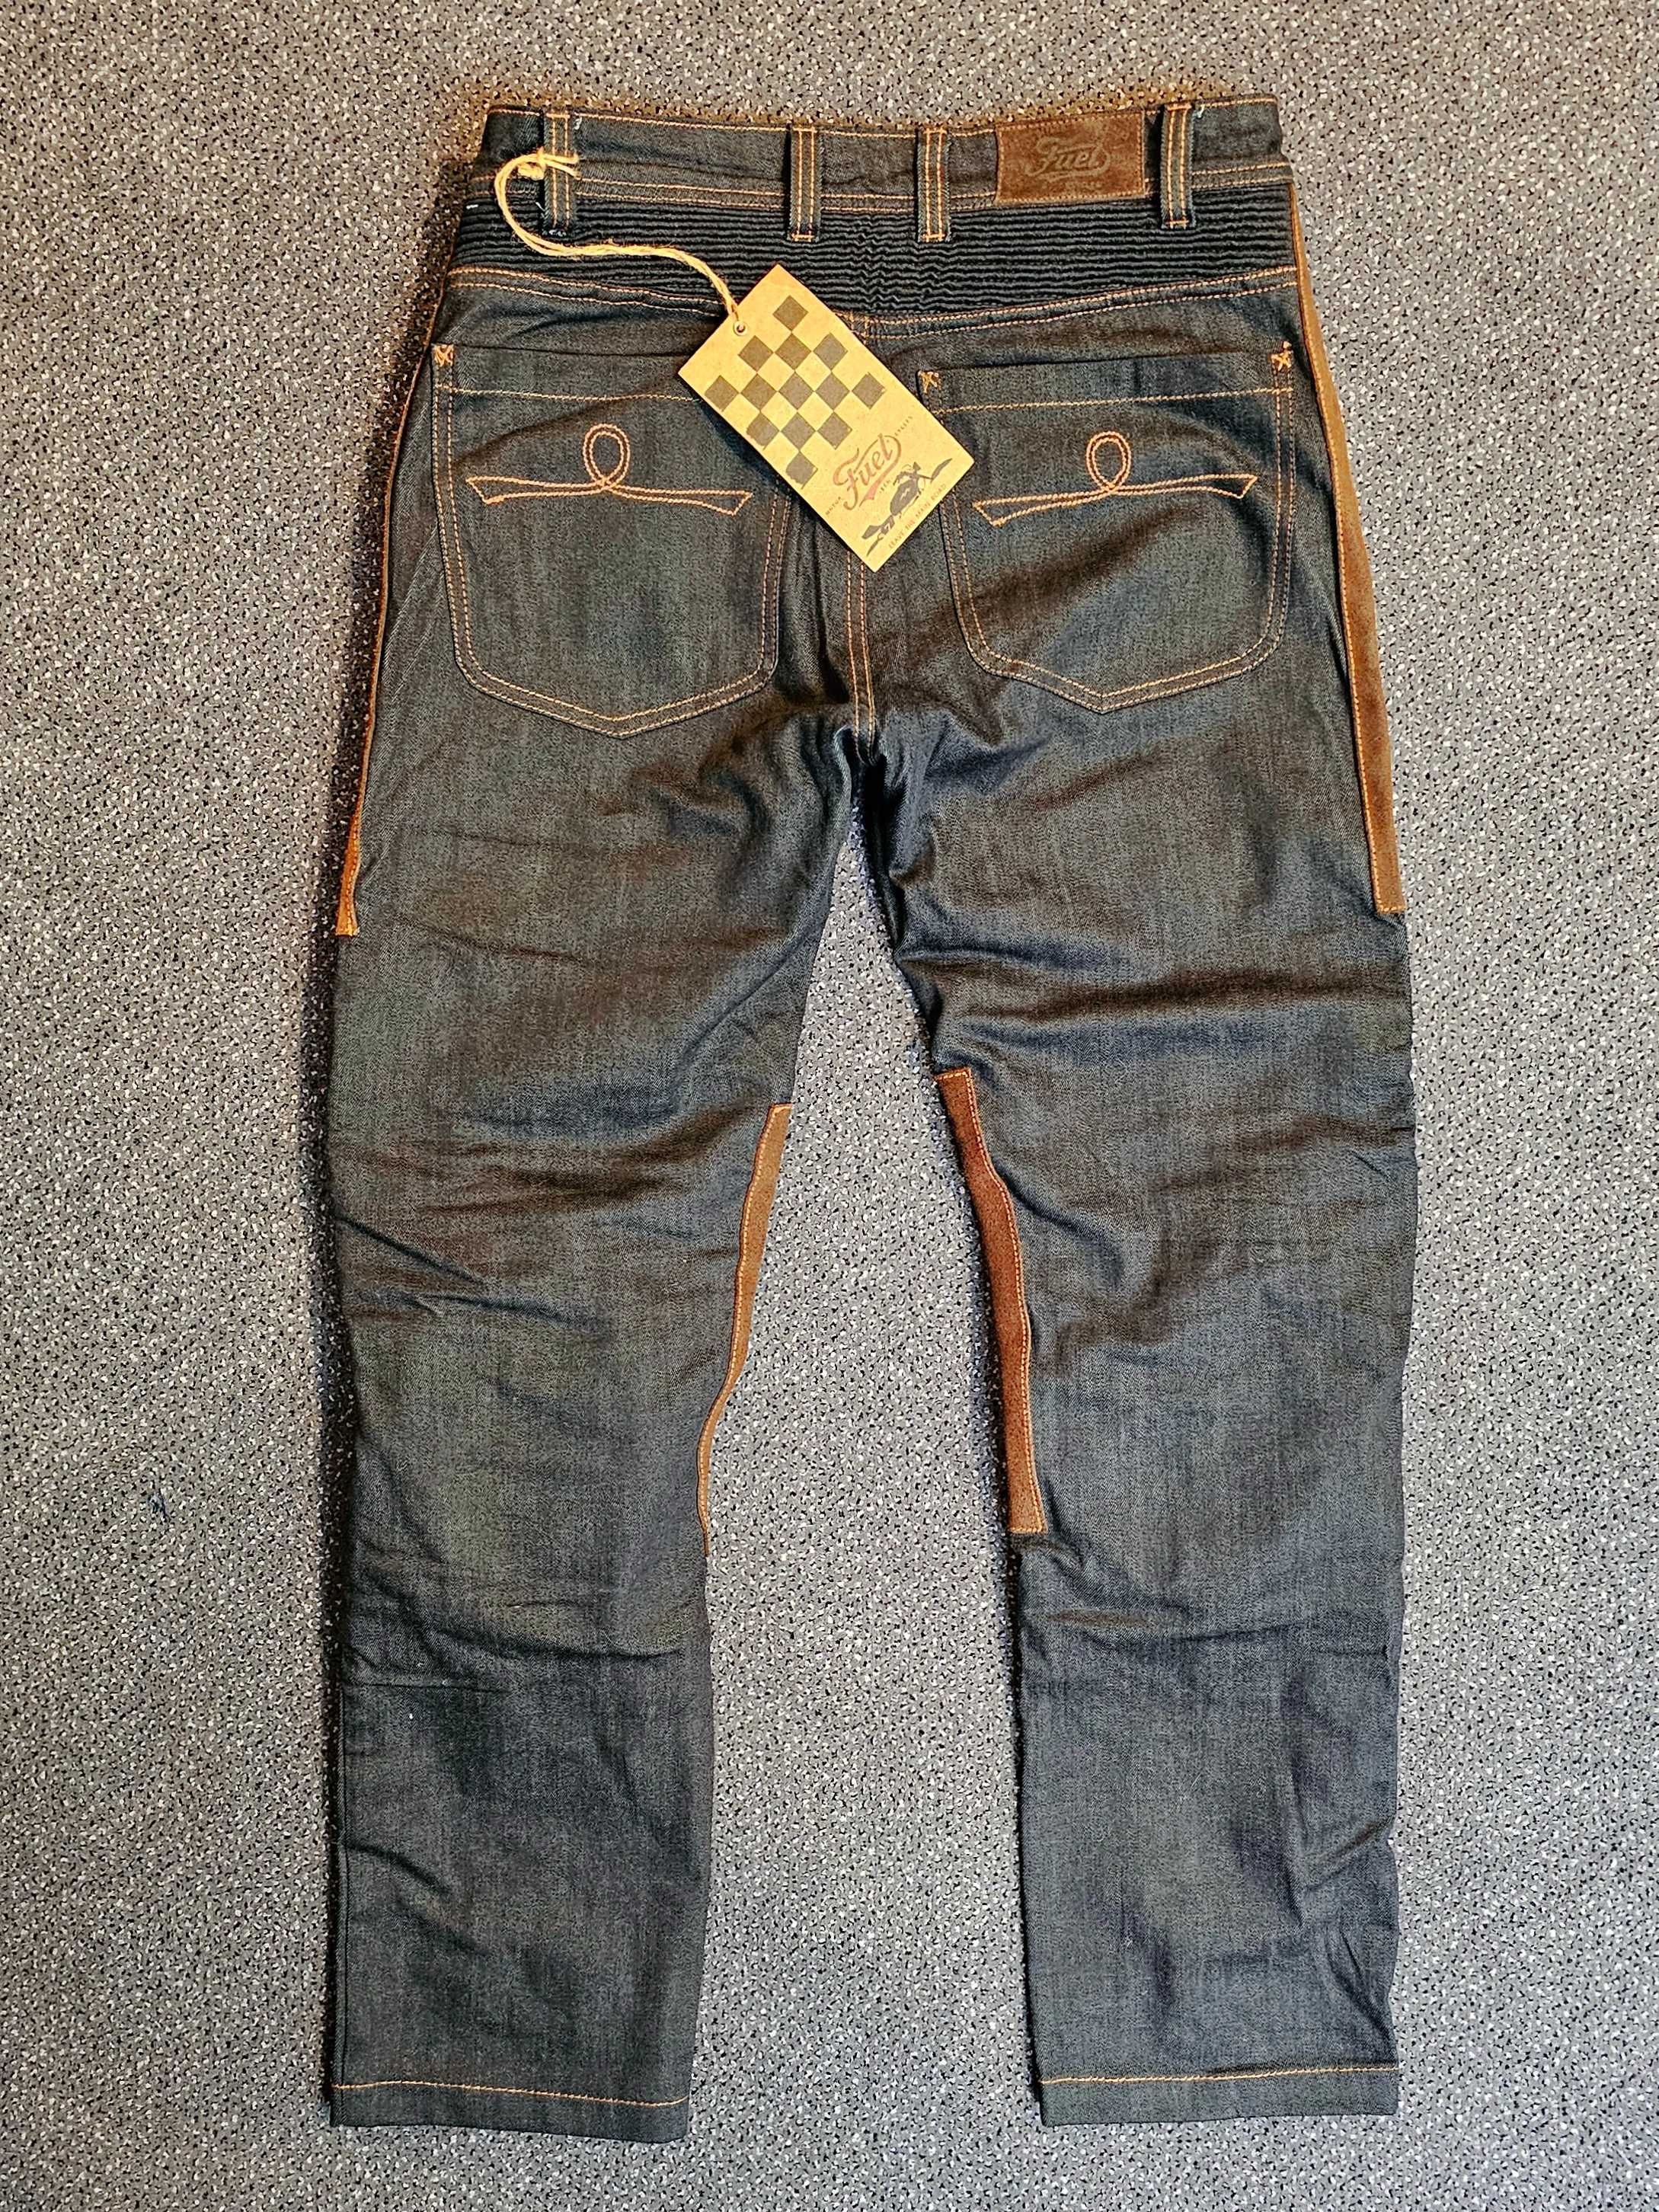 Markowe spodnie motocyklowe FUEL SERGEANT - tekstylne, jeans, skóra